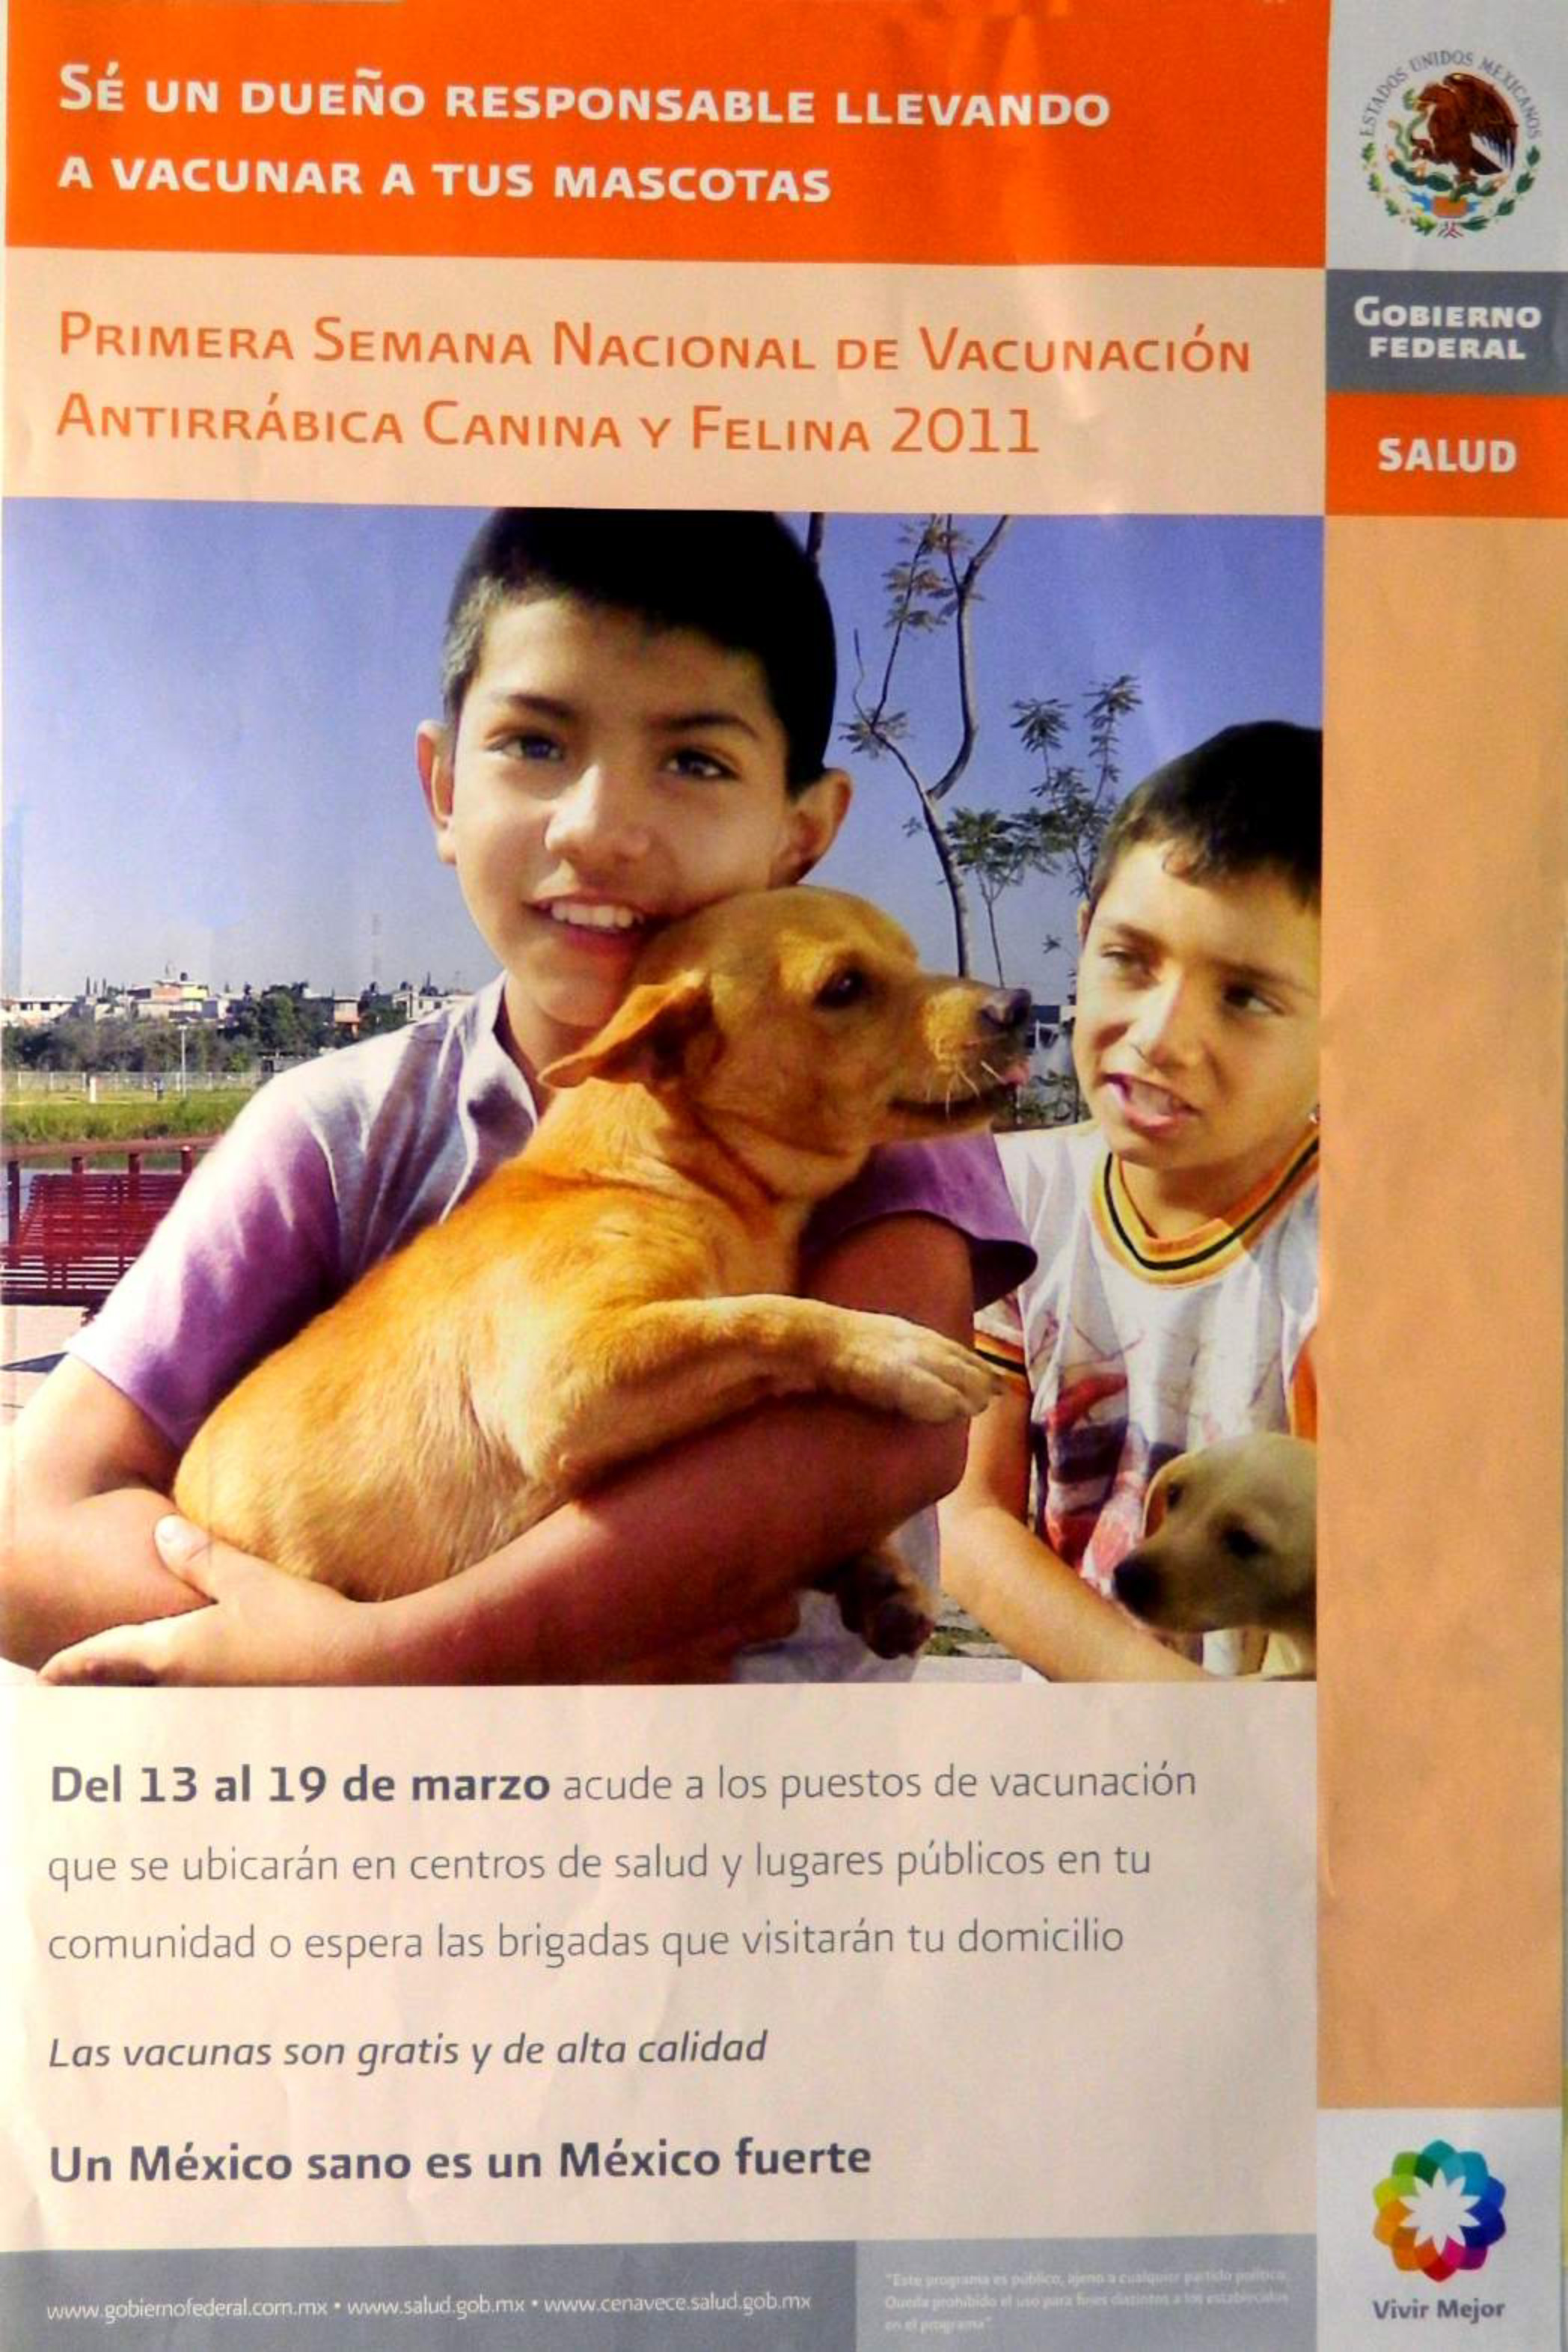 Cartel conmemorativo de la Semana Nacional de Vacunación Antirrábica Canina y Felina 2011